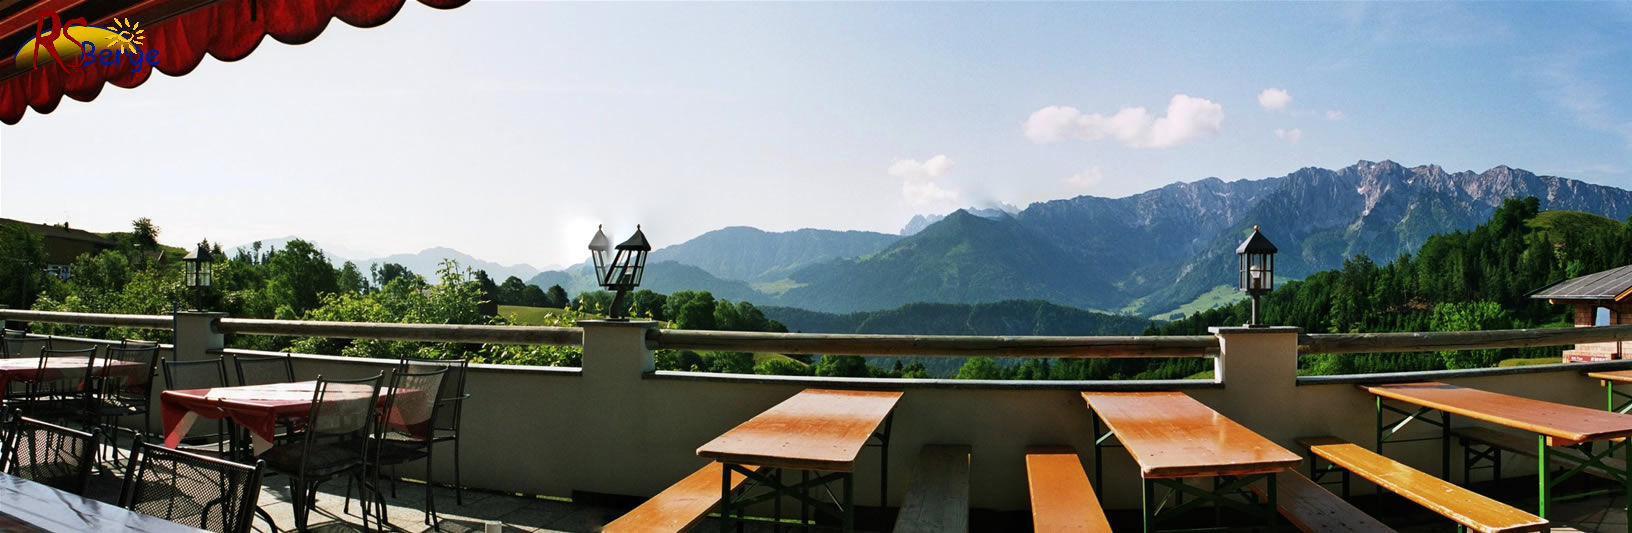 Wanderung 127 Wandberg: Panorama von der Terrasse zur Schönen Aussicht